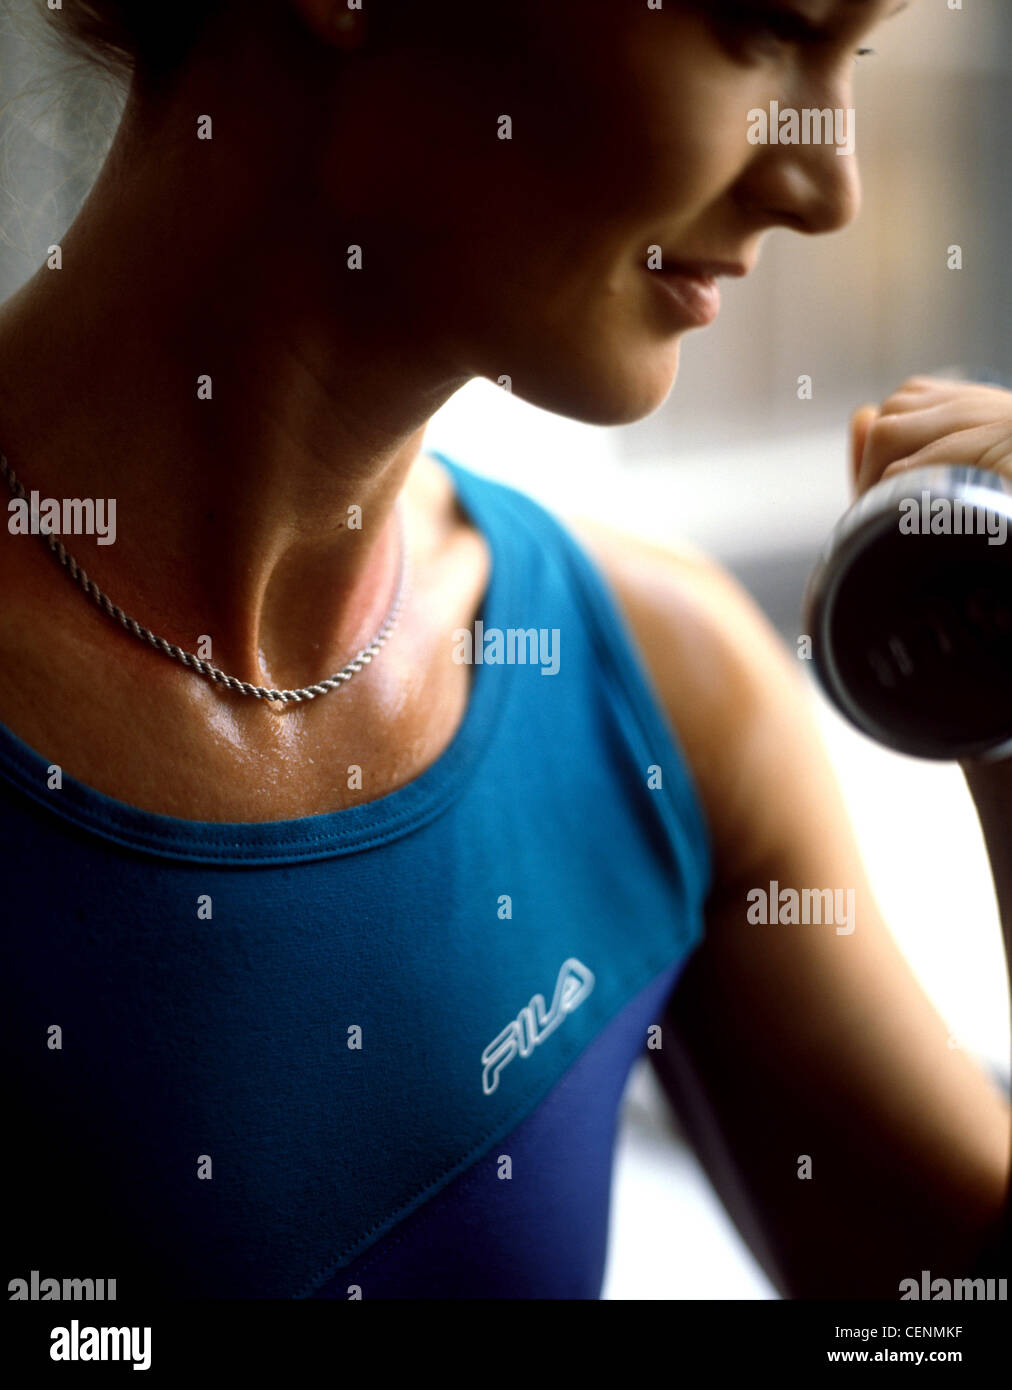 Zugeschnittenes Bild von weiblich, trägt eine silberne Kette Halskette und blaue Weste, Training mit Hanteln, Lächeln, wir auf der Seite Stockfoto